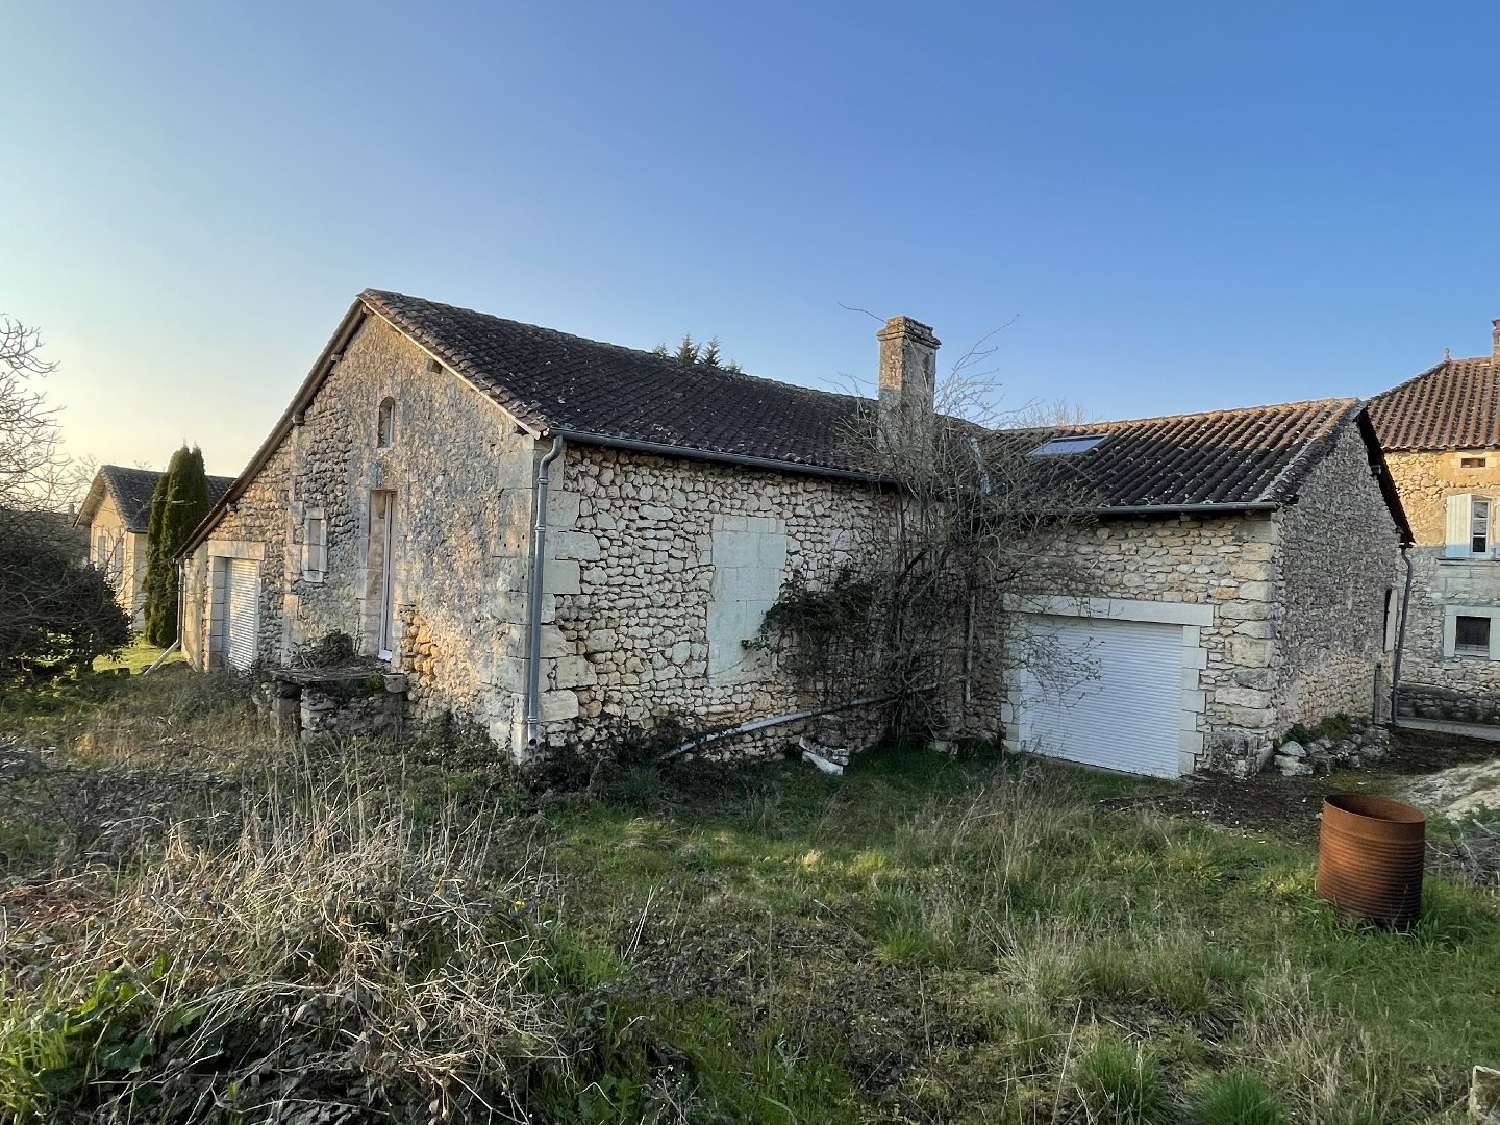  for sale village house Bourdeilles Dordogne 1